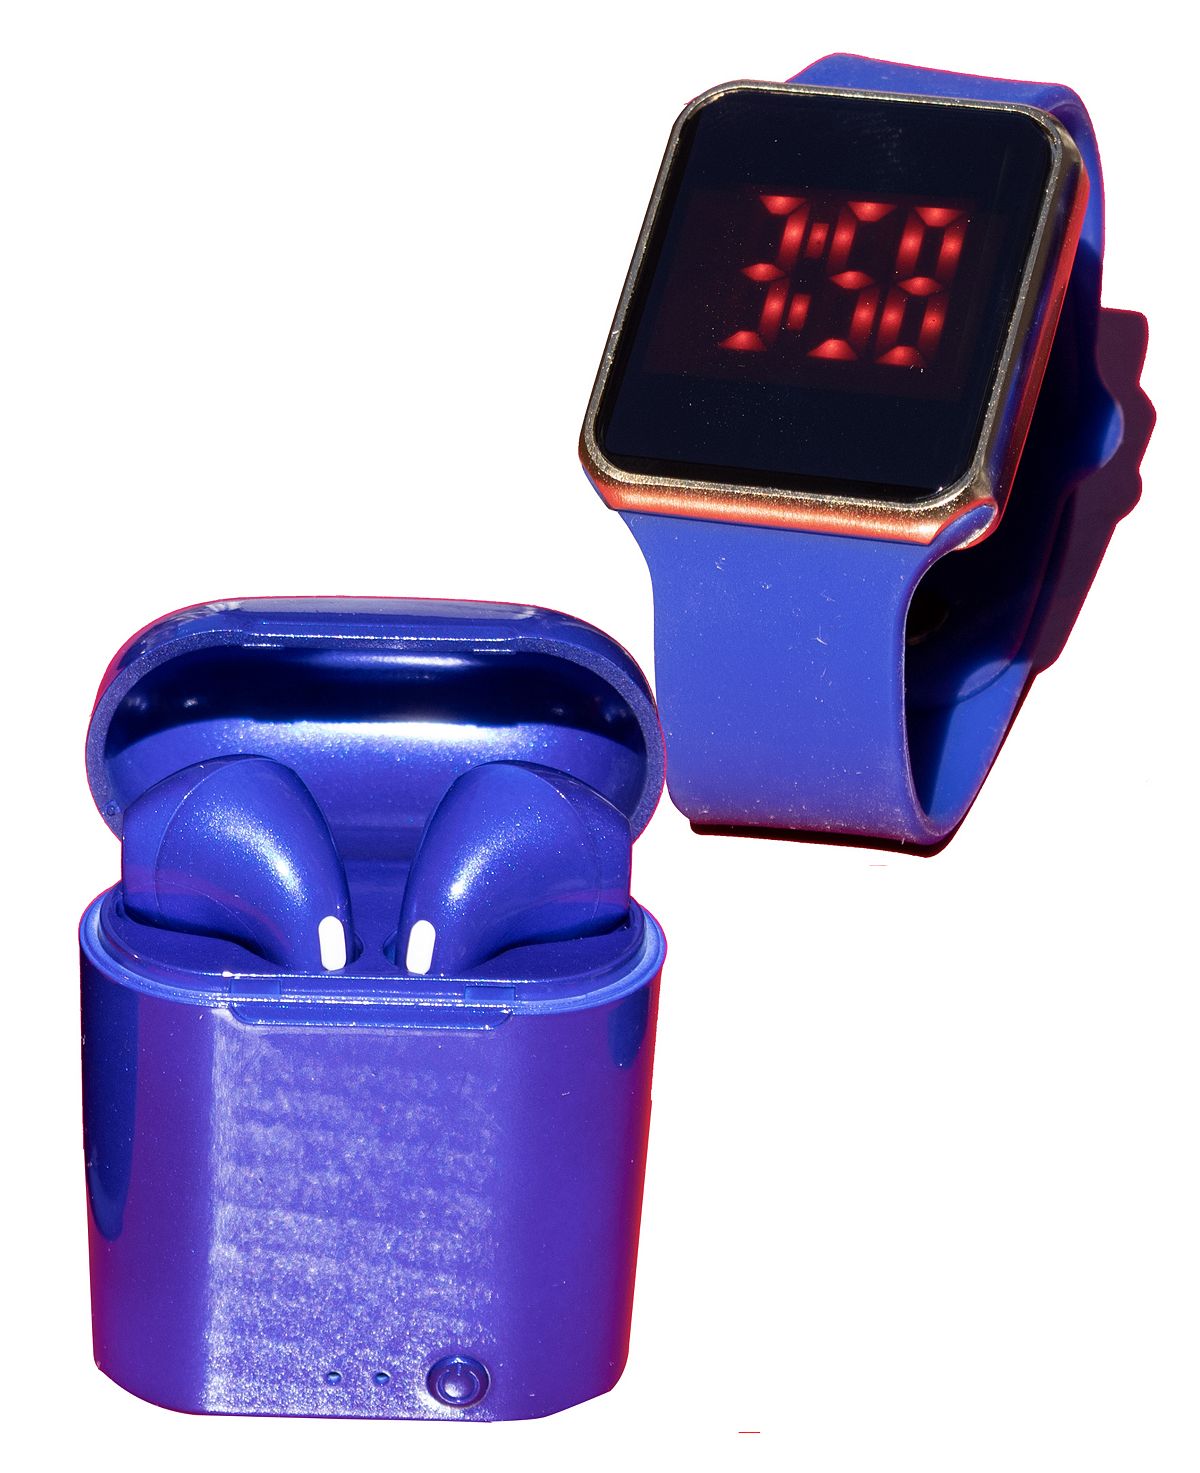 moonbeam watch set gold watch Унисекс светодиодные сенсорные часы и беспроводные наушники с портативным чехлом для зарядки Ztech